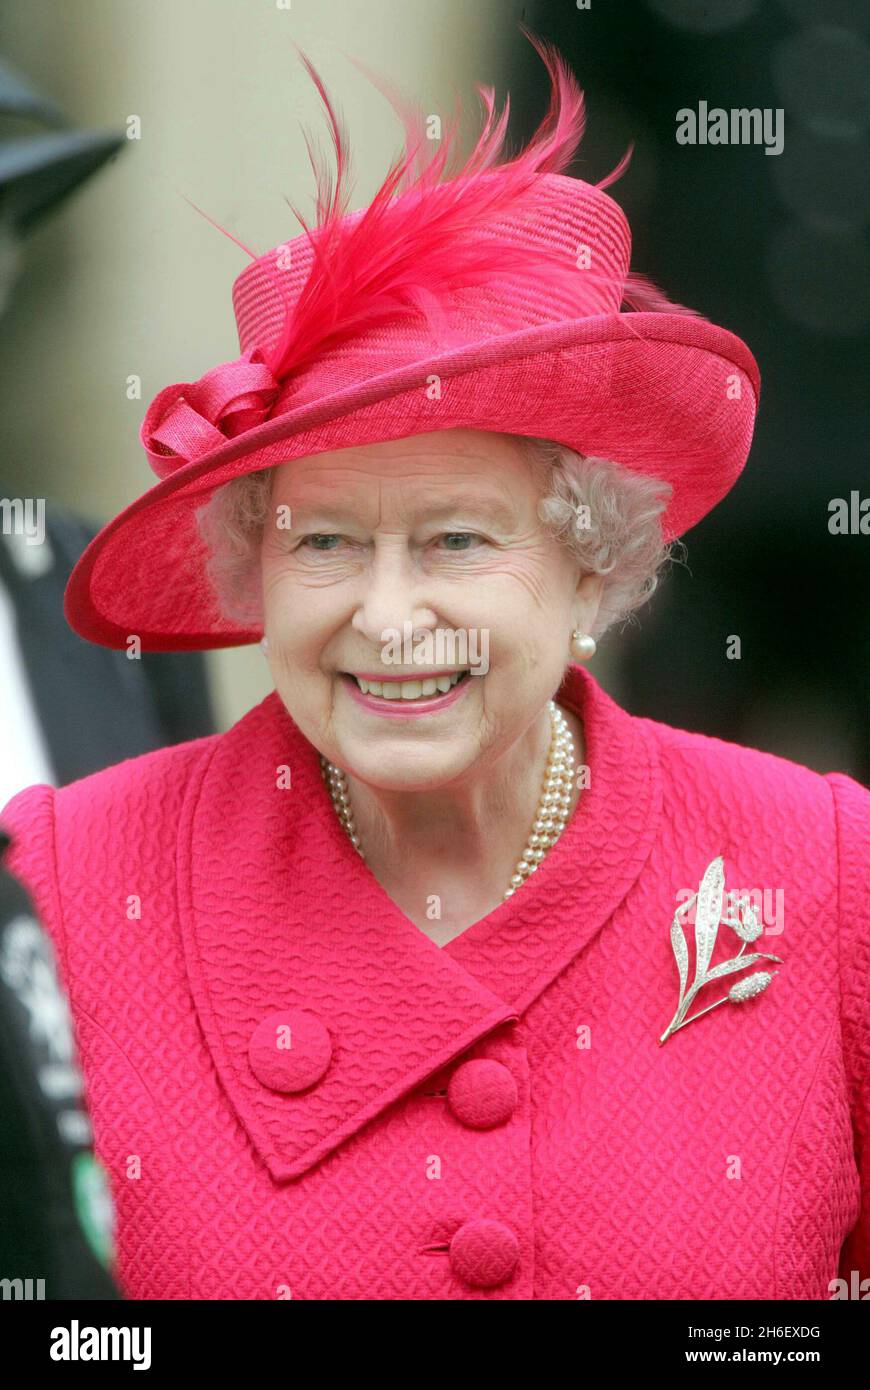 HM Queen Elizabeth II celebrates her 80th birthday. Stock Photo